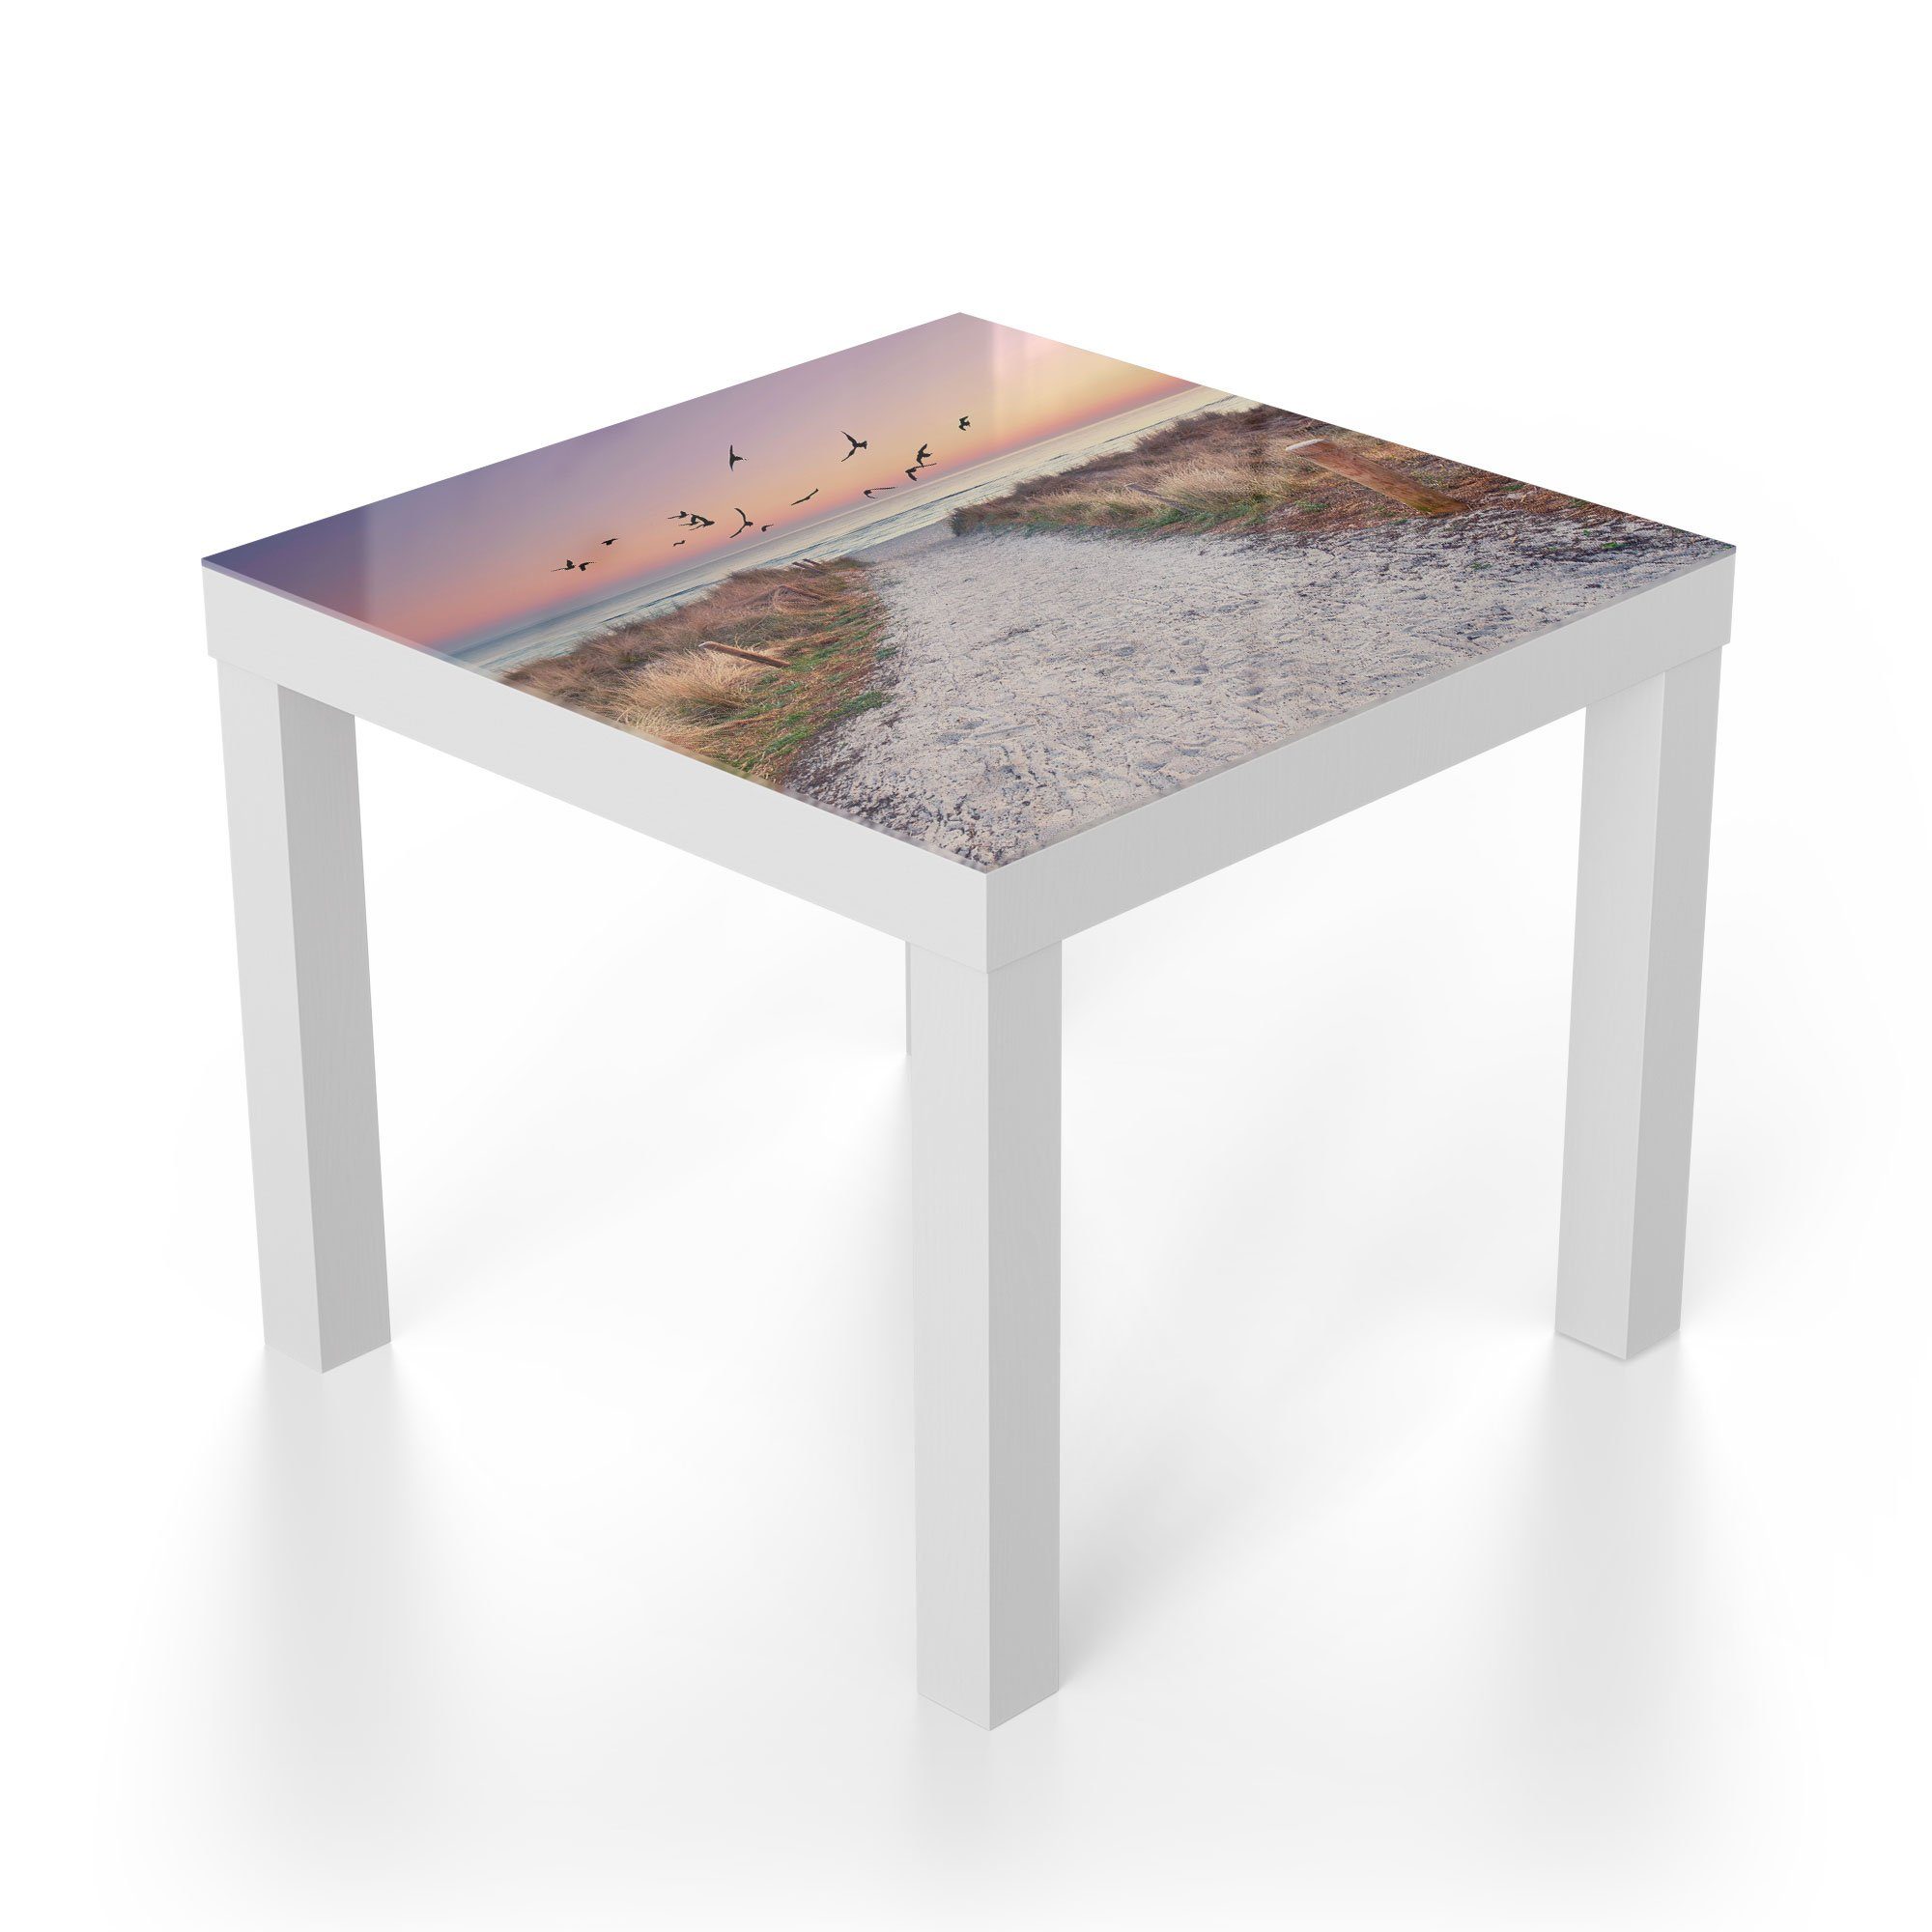 DEQORI 'Strandaufgang Weiß Glastisch Couchtisch Ostsee', Beistelltisch modern zur Glas